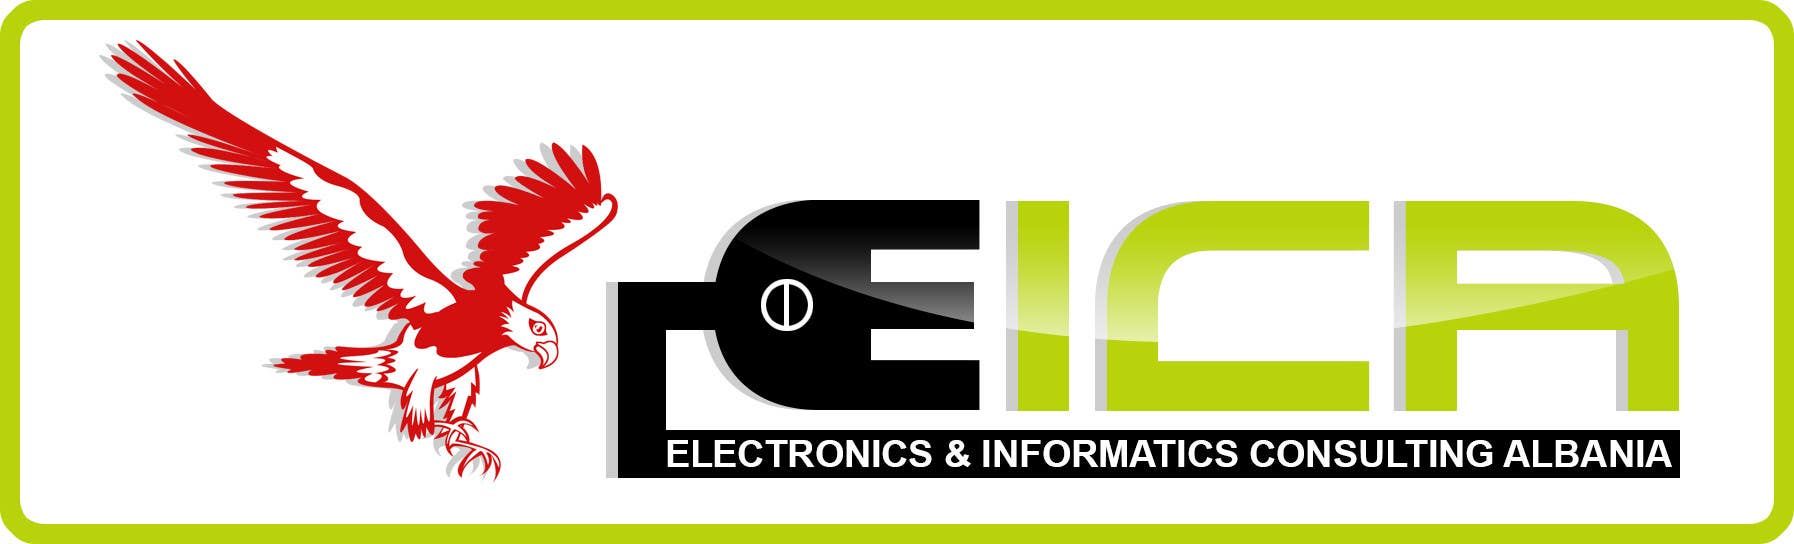 
                                                                                                                        Penyertaan Peraduan #                                            33
                                         untuk                                             Design a Logo for an Electronics & Informatics Consulting Company
                                        